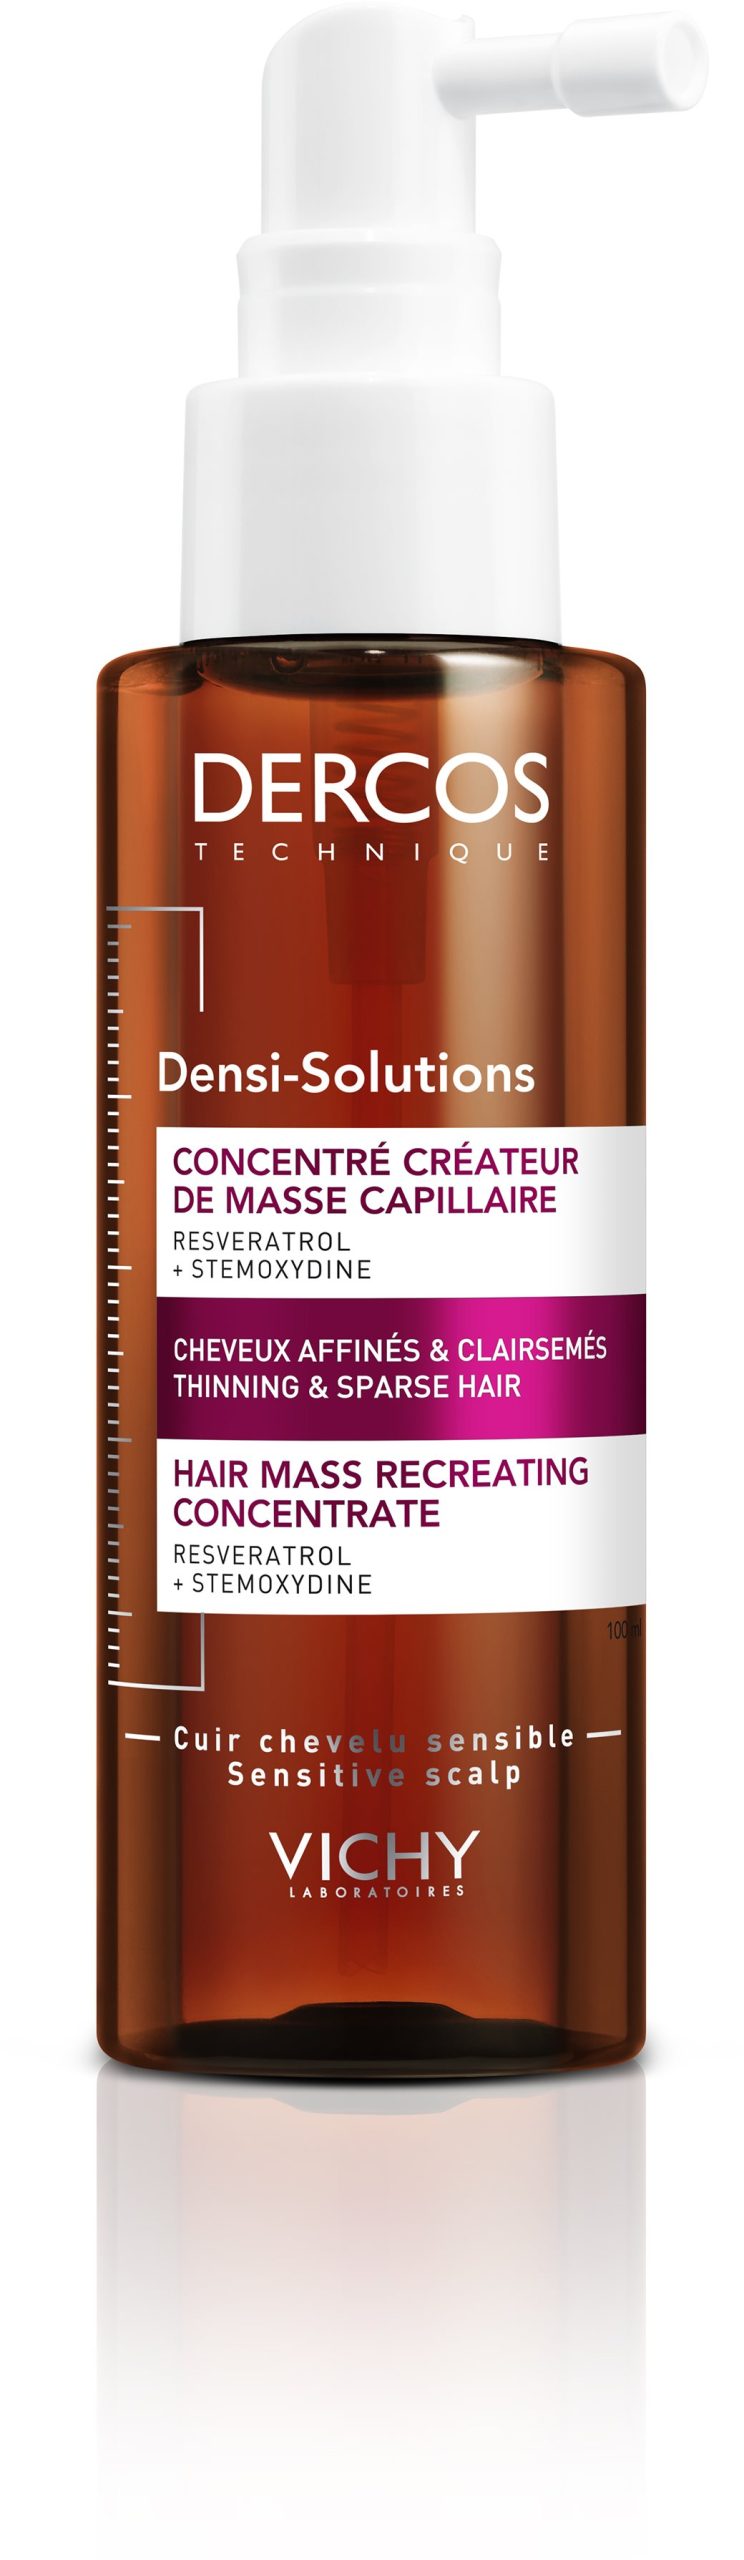 Hajápoló VICHY Dercos Densi-Solutions haj sűrűséget támogató kezelés 100 ml